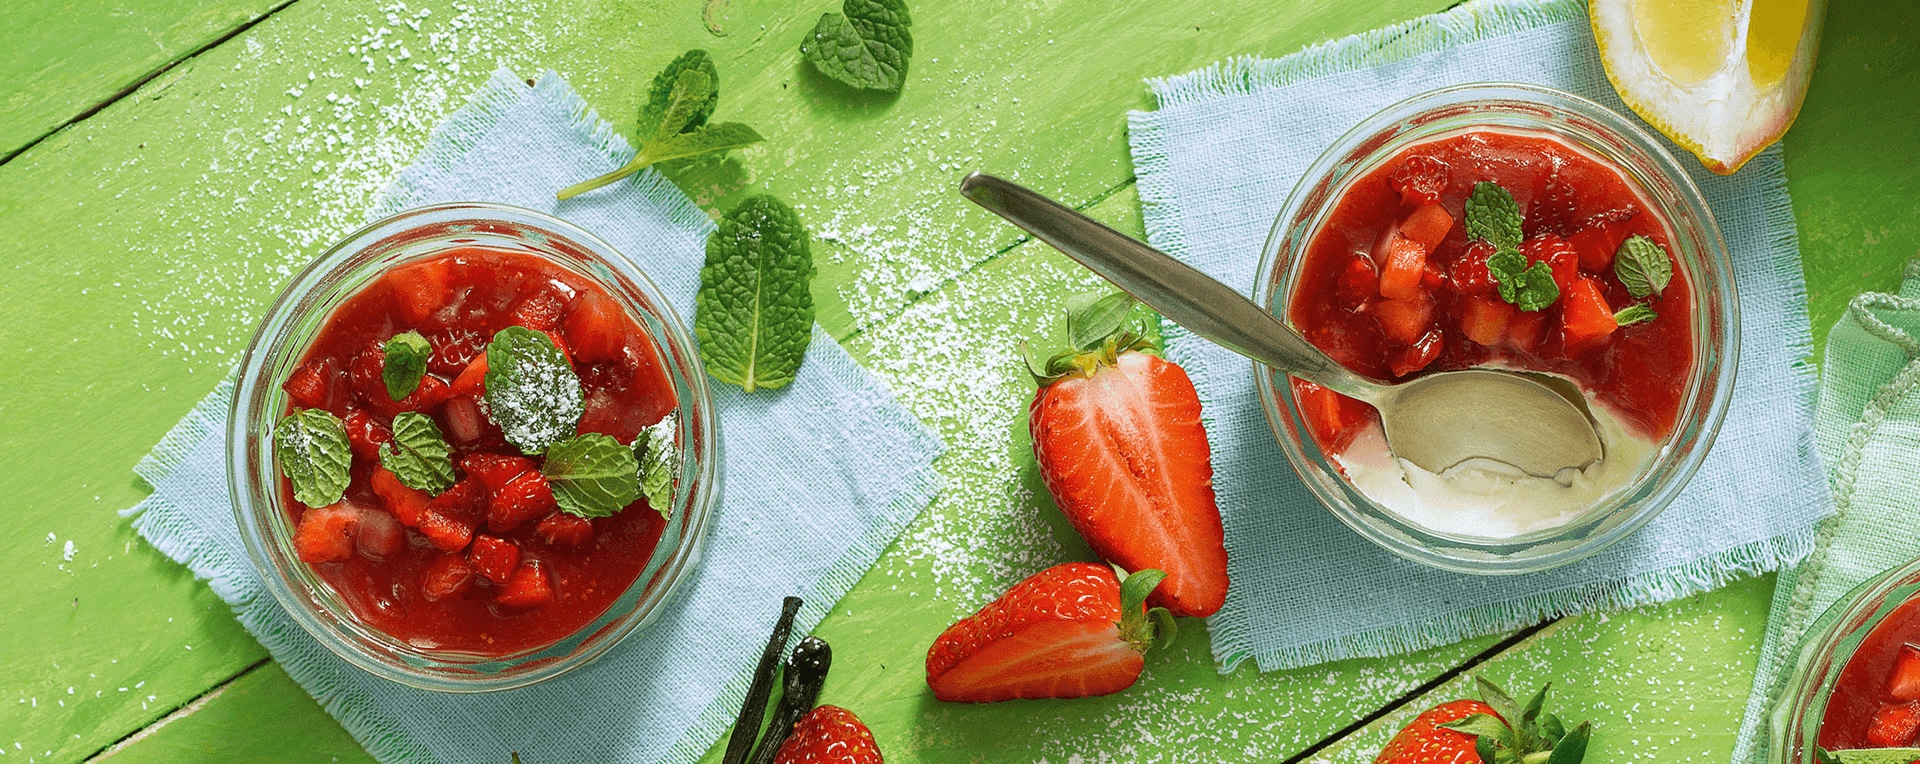 Panna cotta mit frischen Erdbeeren